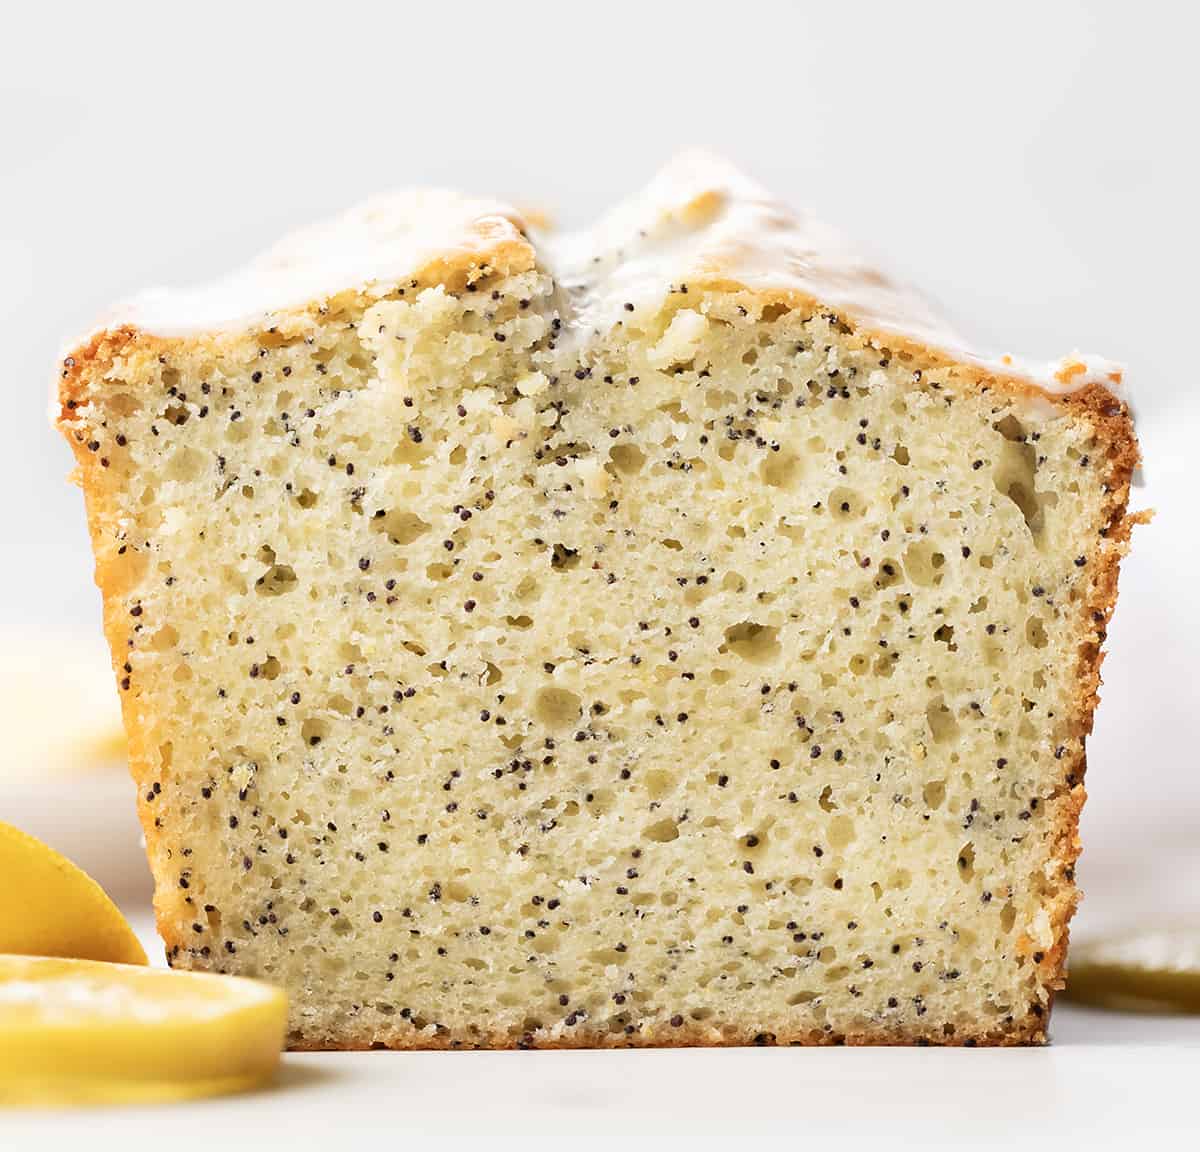 Loaf of Lemon Poppy Seed Bread cut in half showing inside texture.